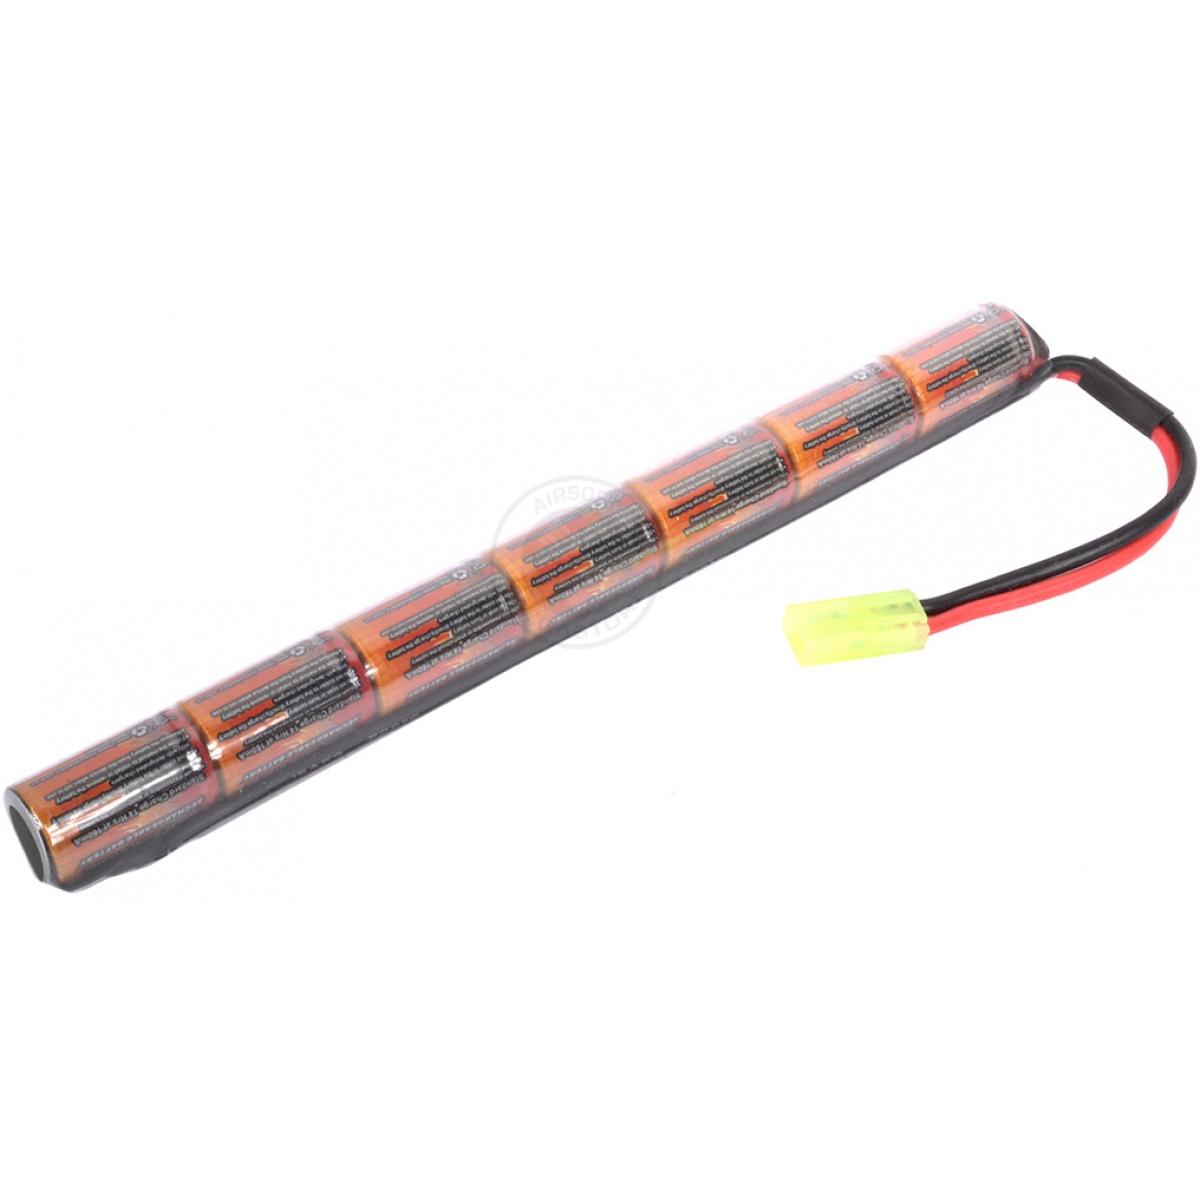 VB-Power 8.4V NiMH Stick-Type Battery for AK-S AK M5-K AEG - 1600 mAh